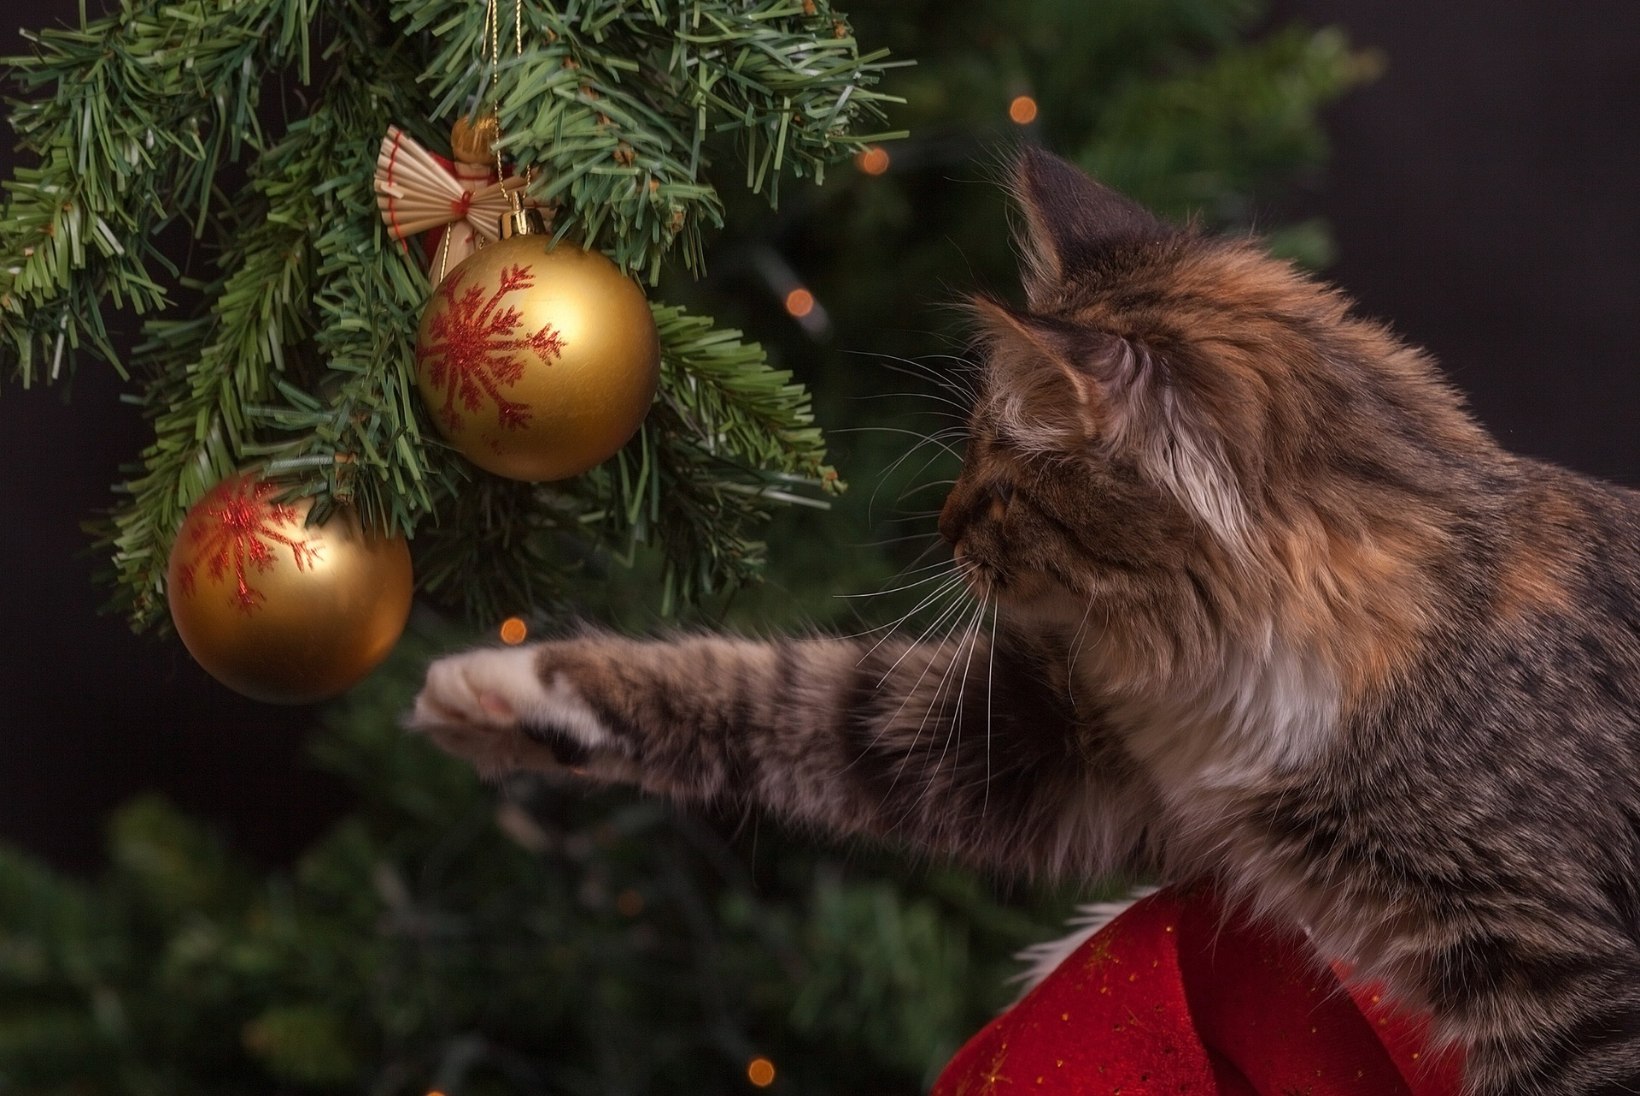 PÜHAD KARVASE SÕBRAGA: trall ümber jõulupuu võib rikkuda lemmiku tervise. Anname sulle vajalikud nipid! 